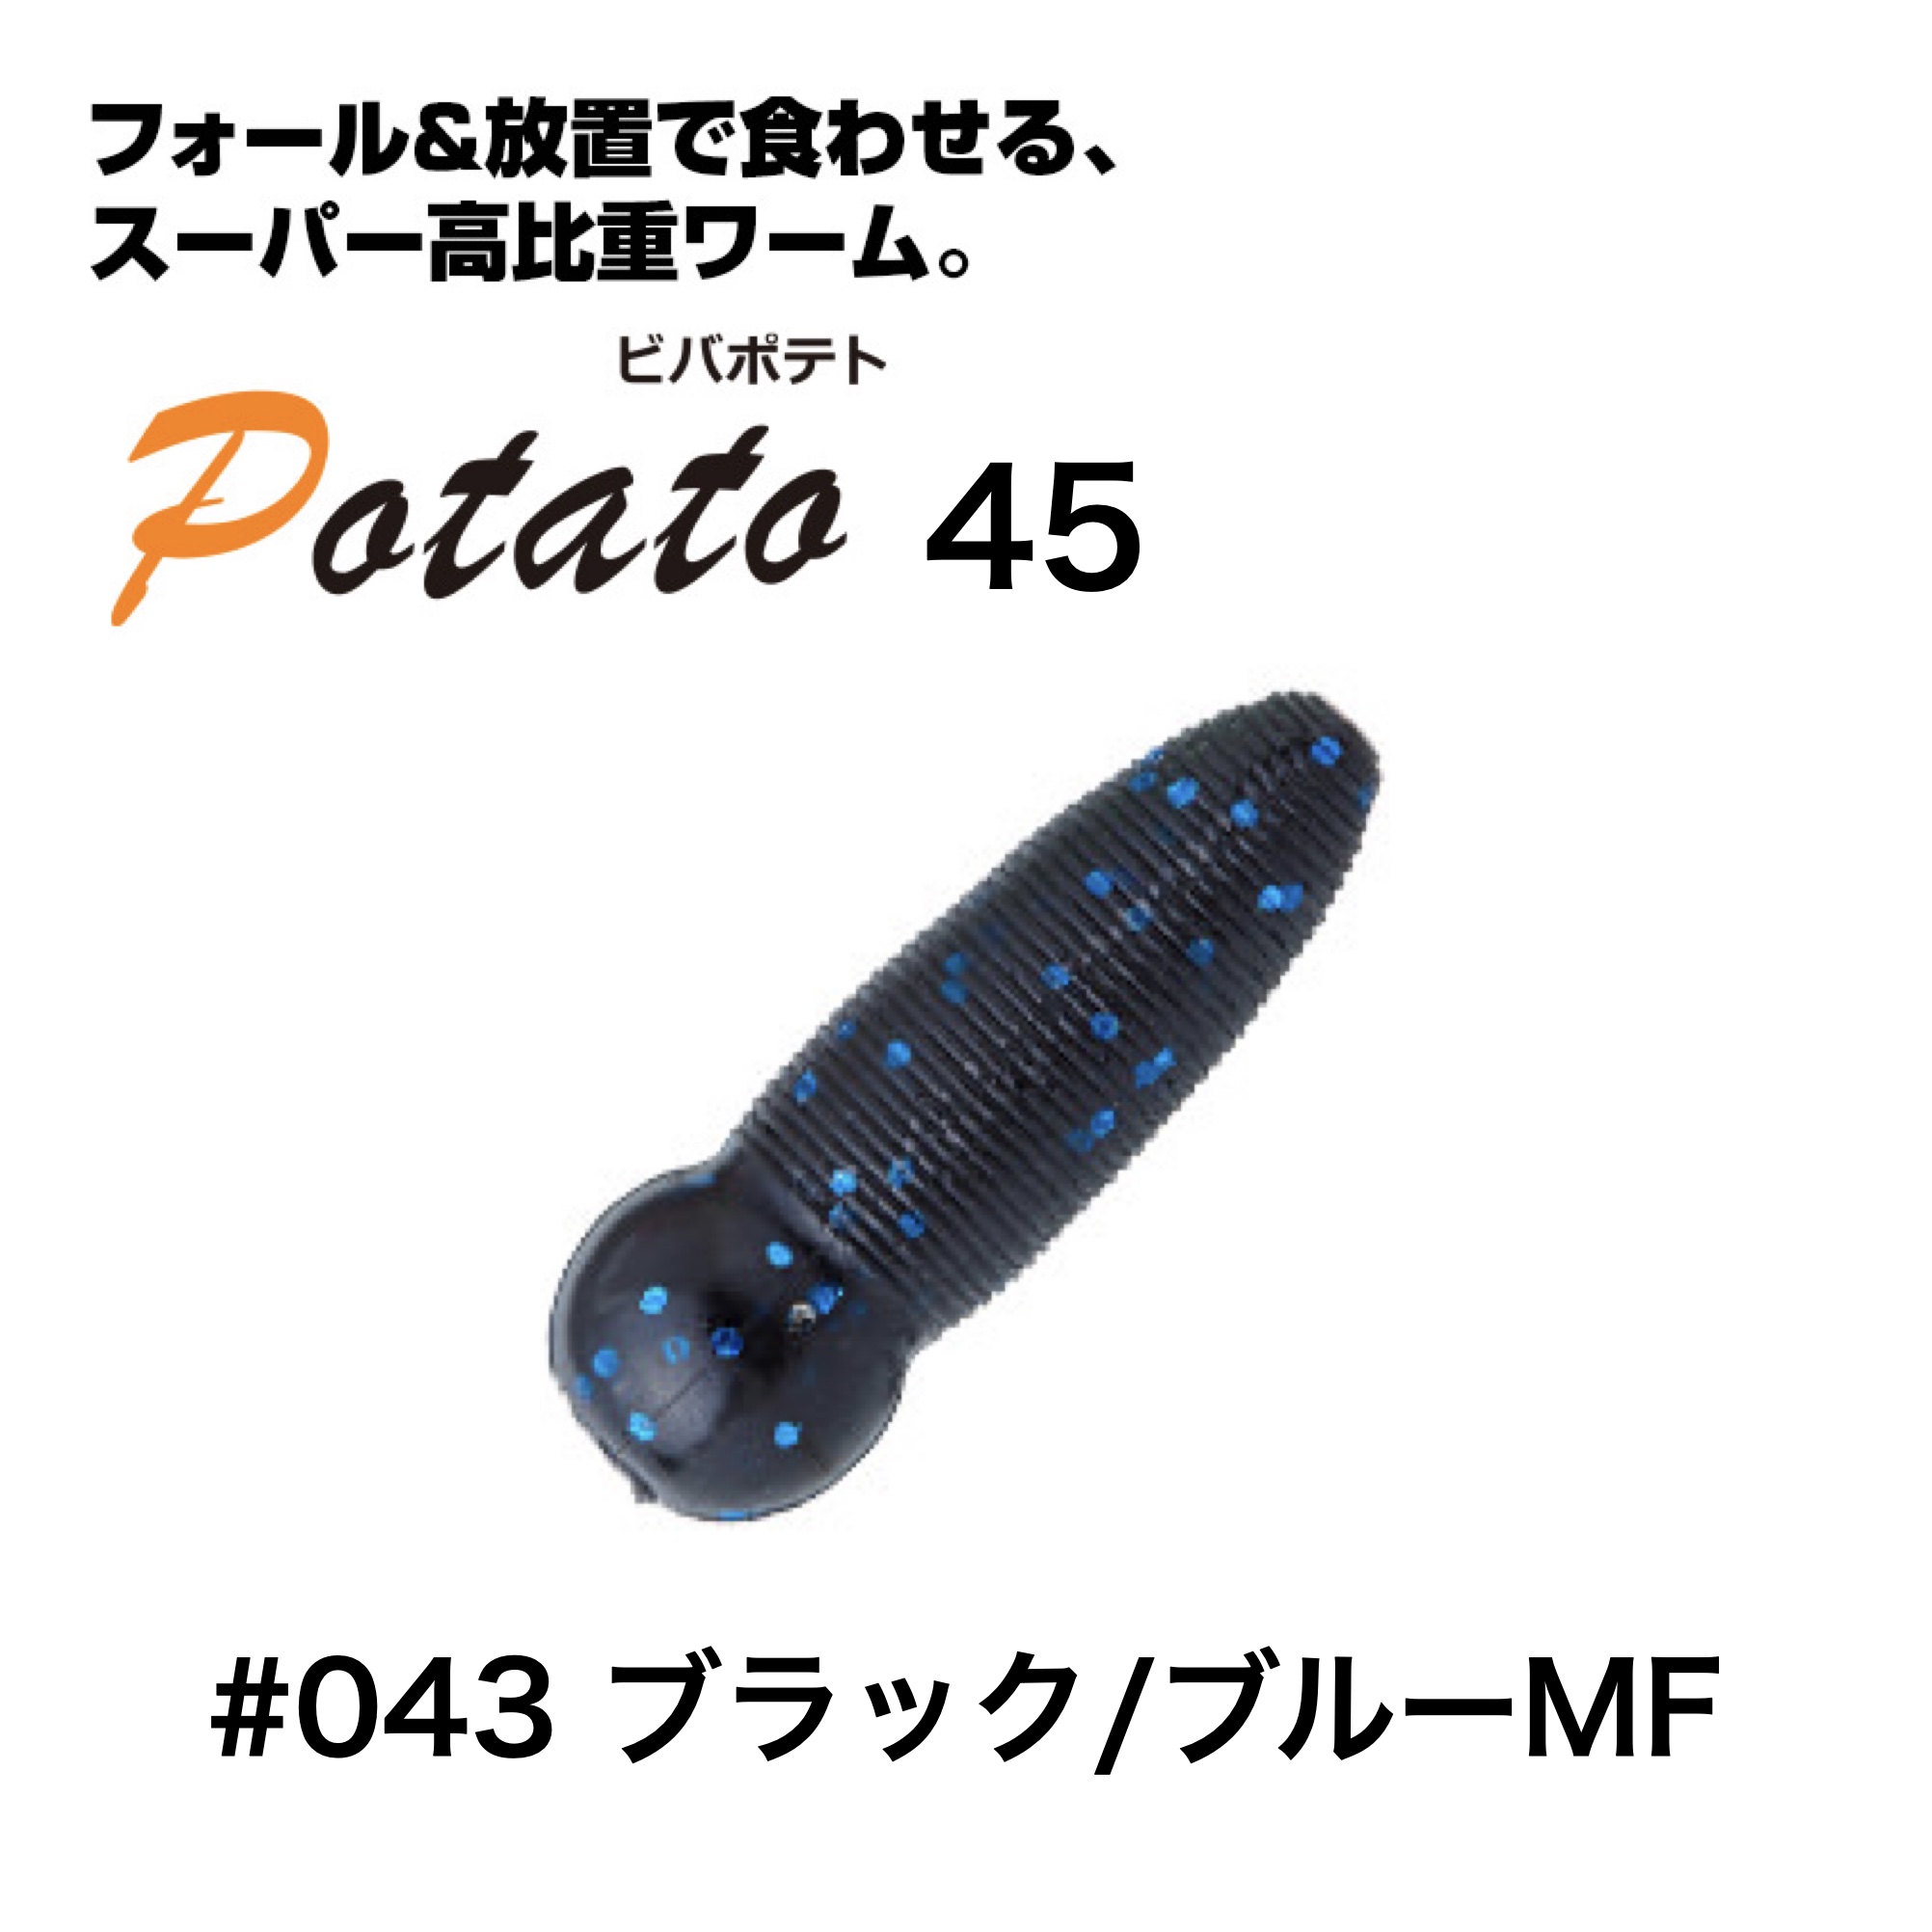 ビバ ポテト 45 ブラック/ブルーMF